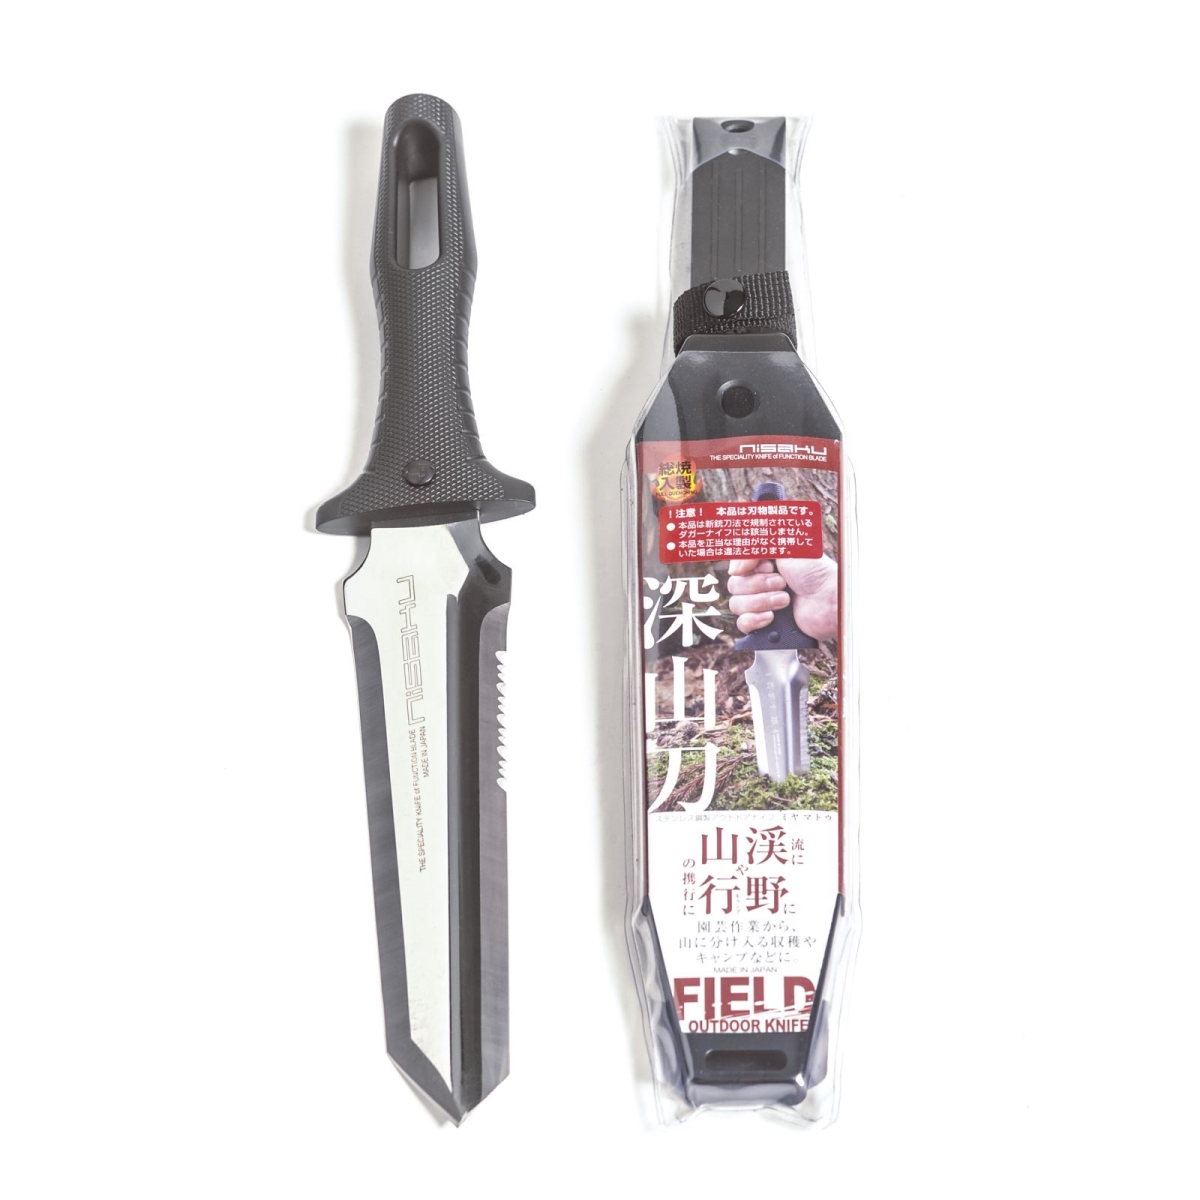 Njp830 7.5 In. Blade Miyamatou Stainless Steel Knife